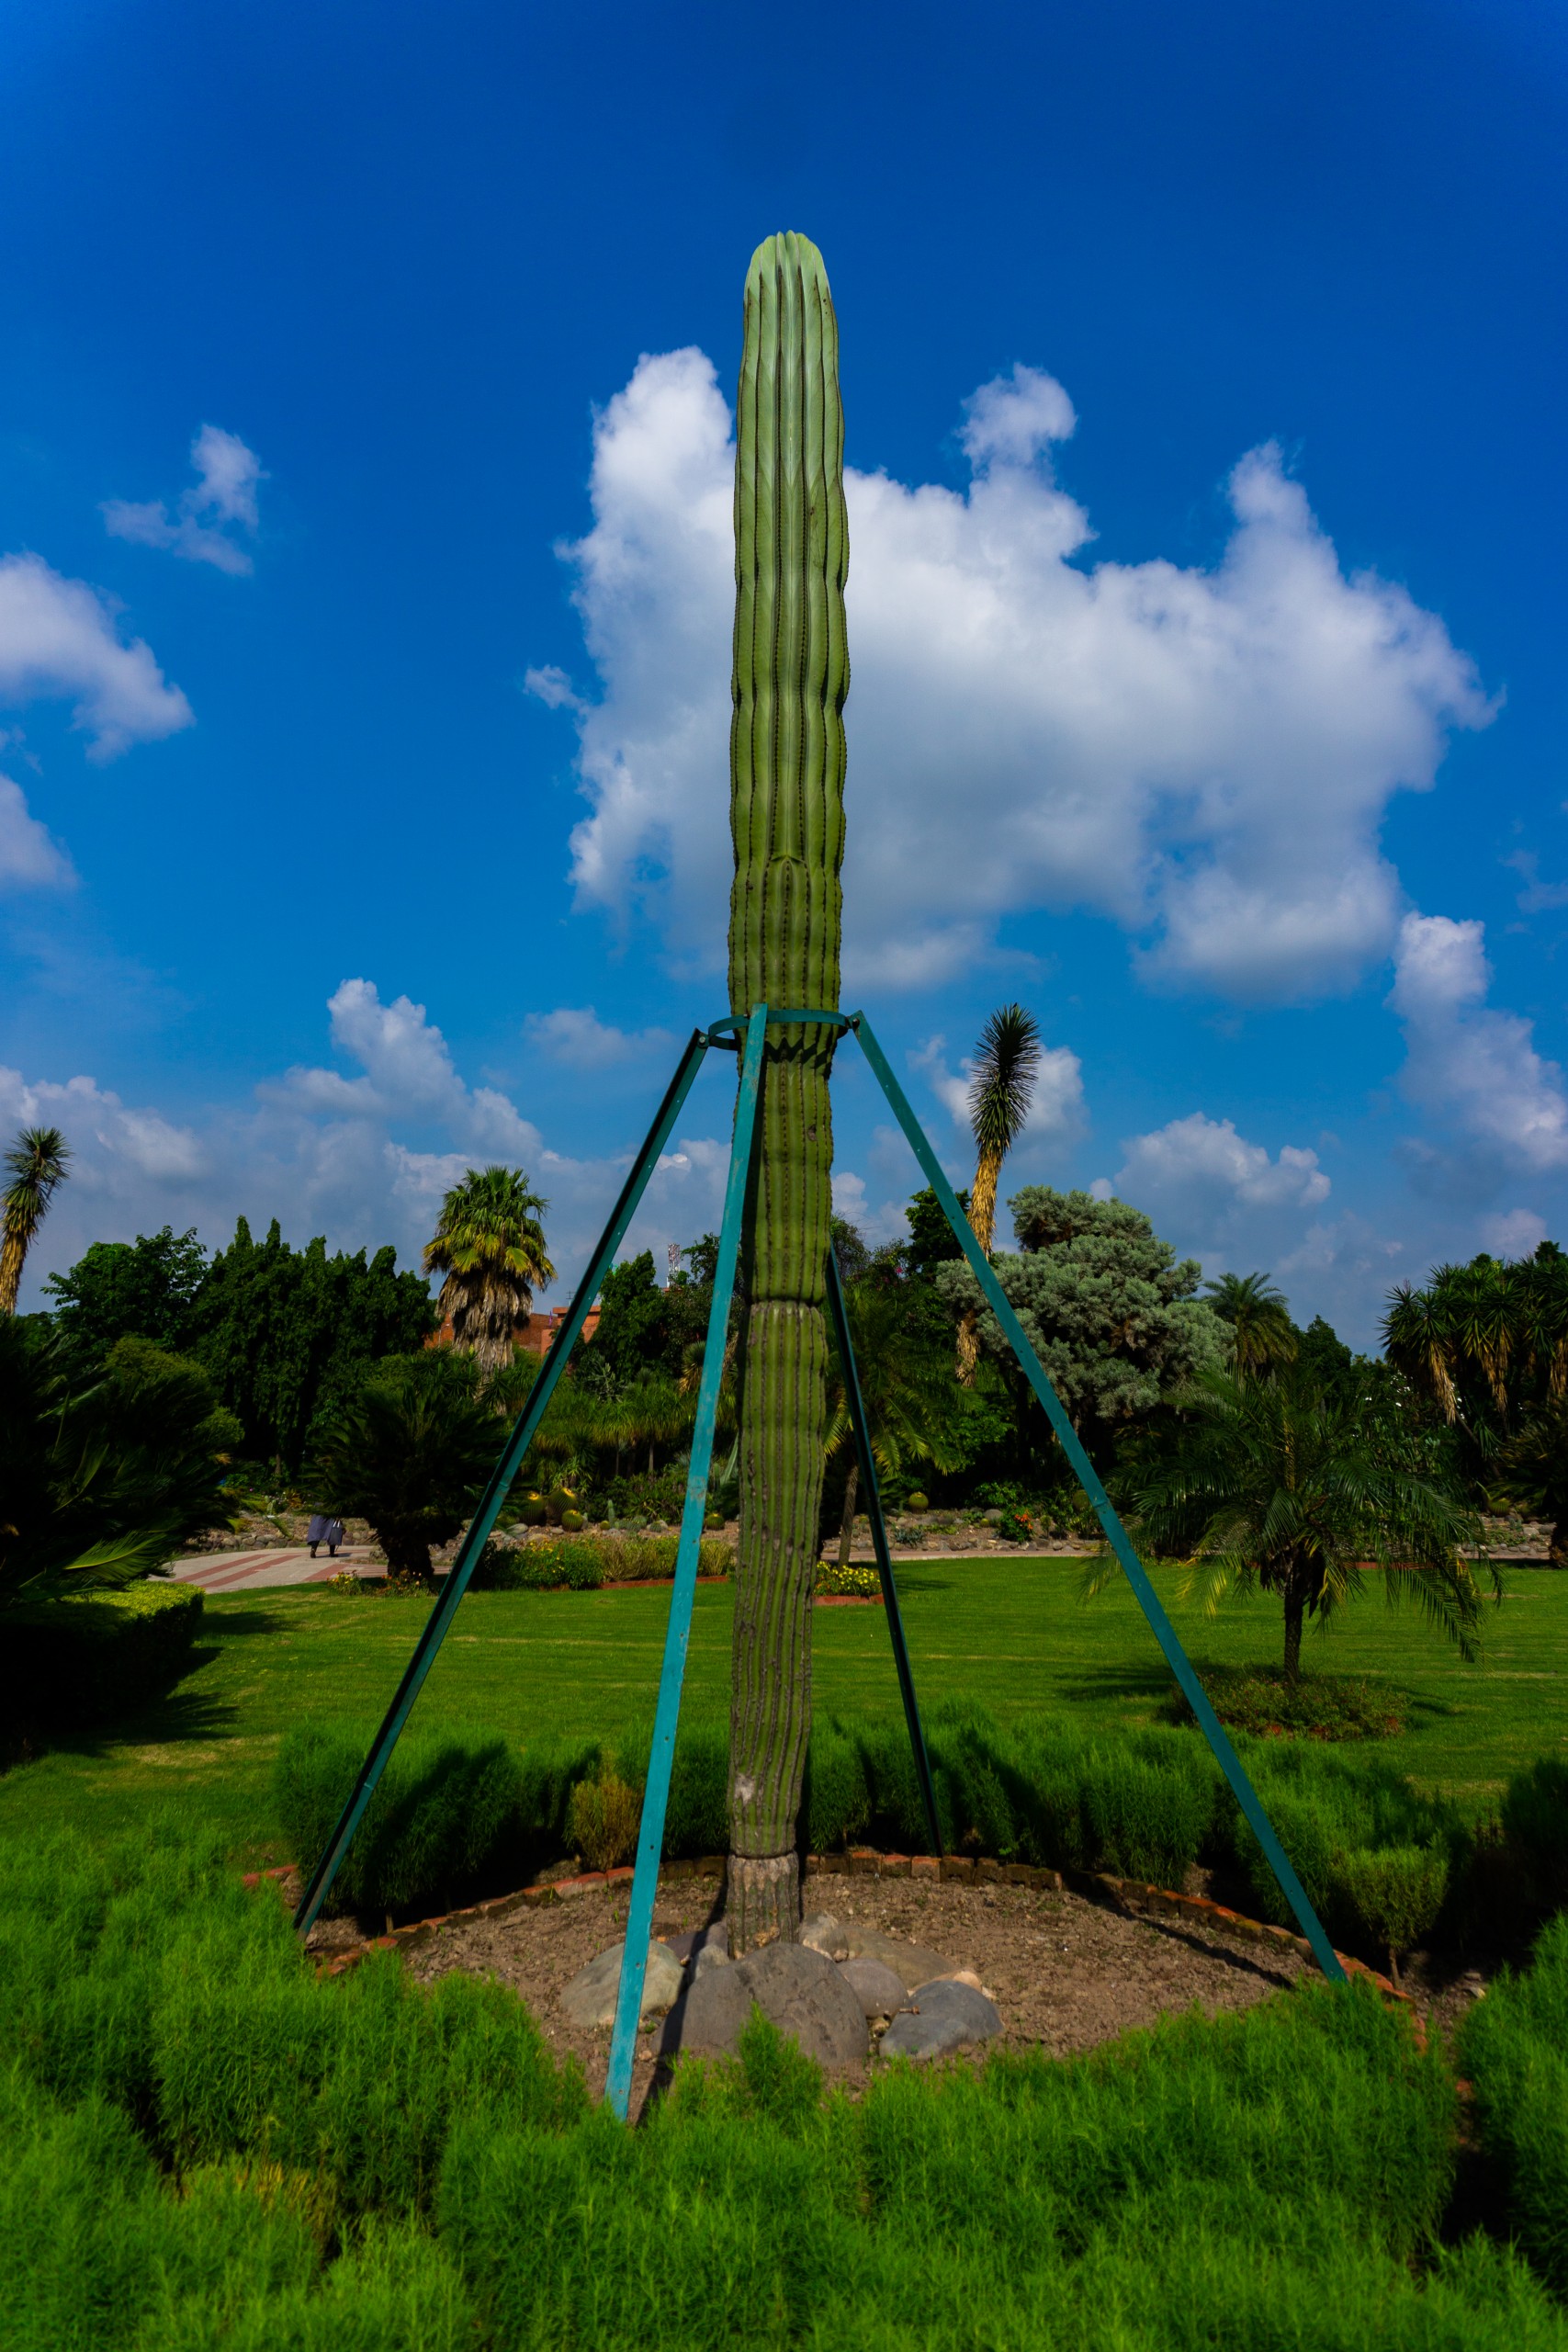 Saguaro Cactus plant